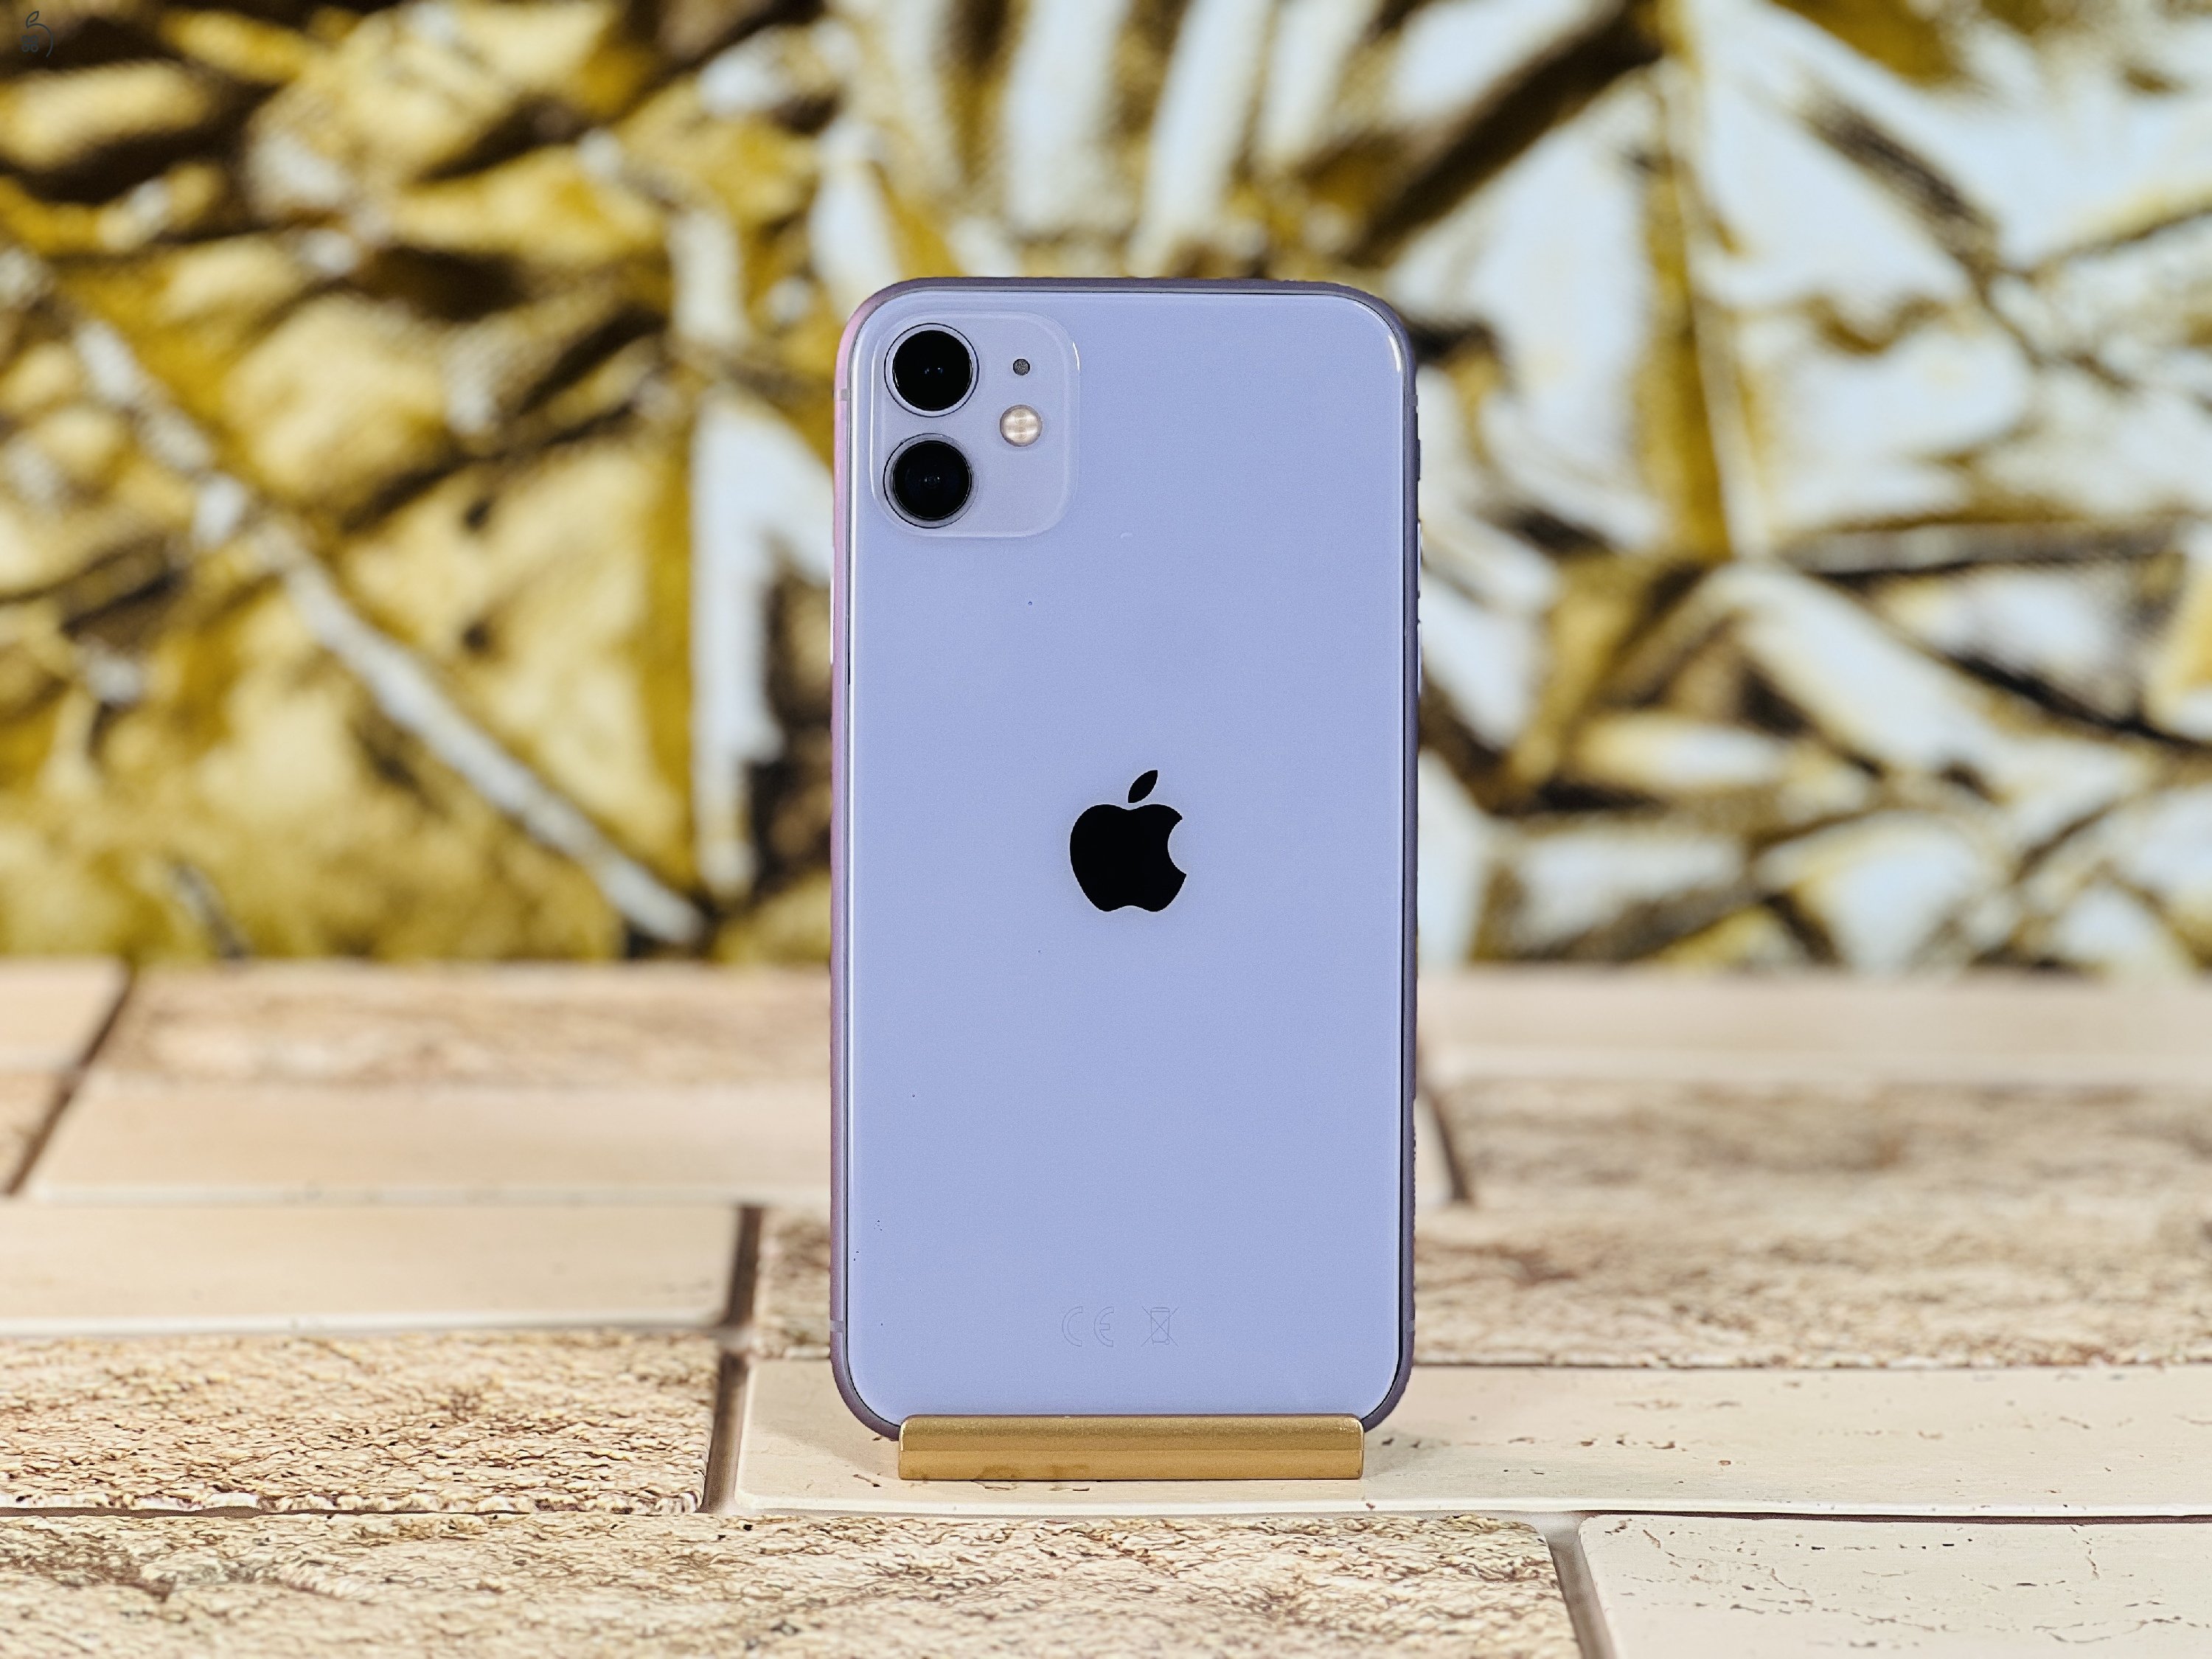 Eladó iPhone 11 64 GB Purple szép állapotú - 12 HÓ GARANCIA - S1361